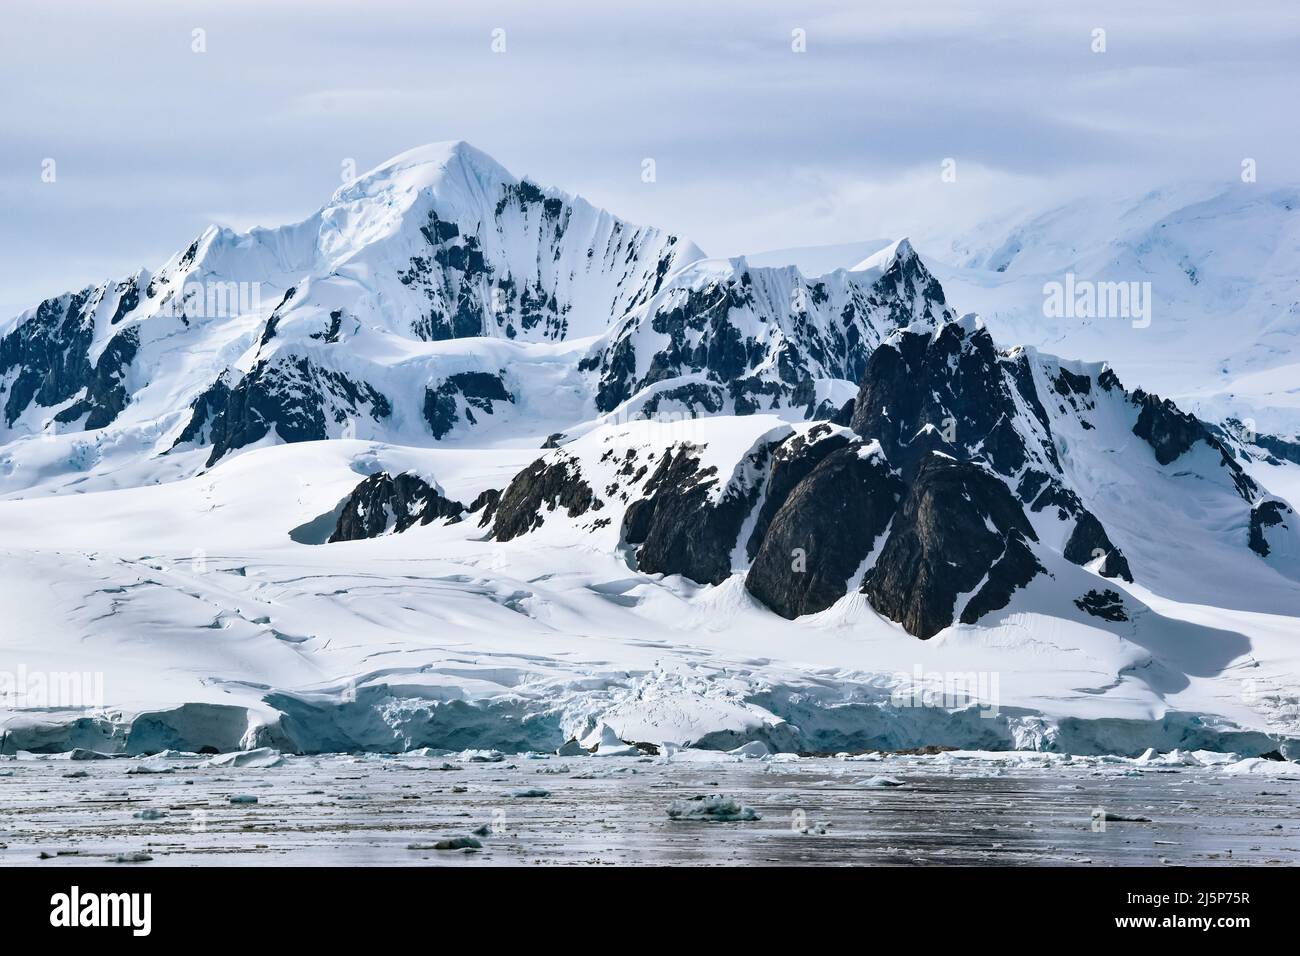 Les montagnes et les glaciers couverts de neige et de glace de l'île Petermann, en Antarctique Banque D'Images